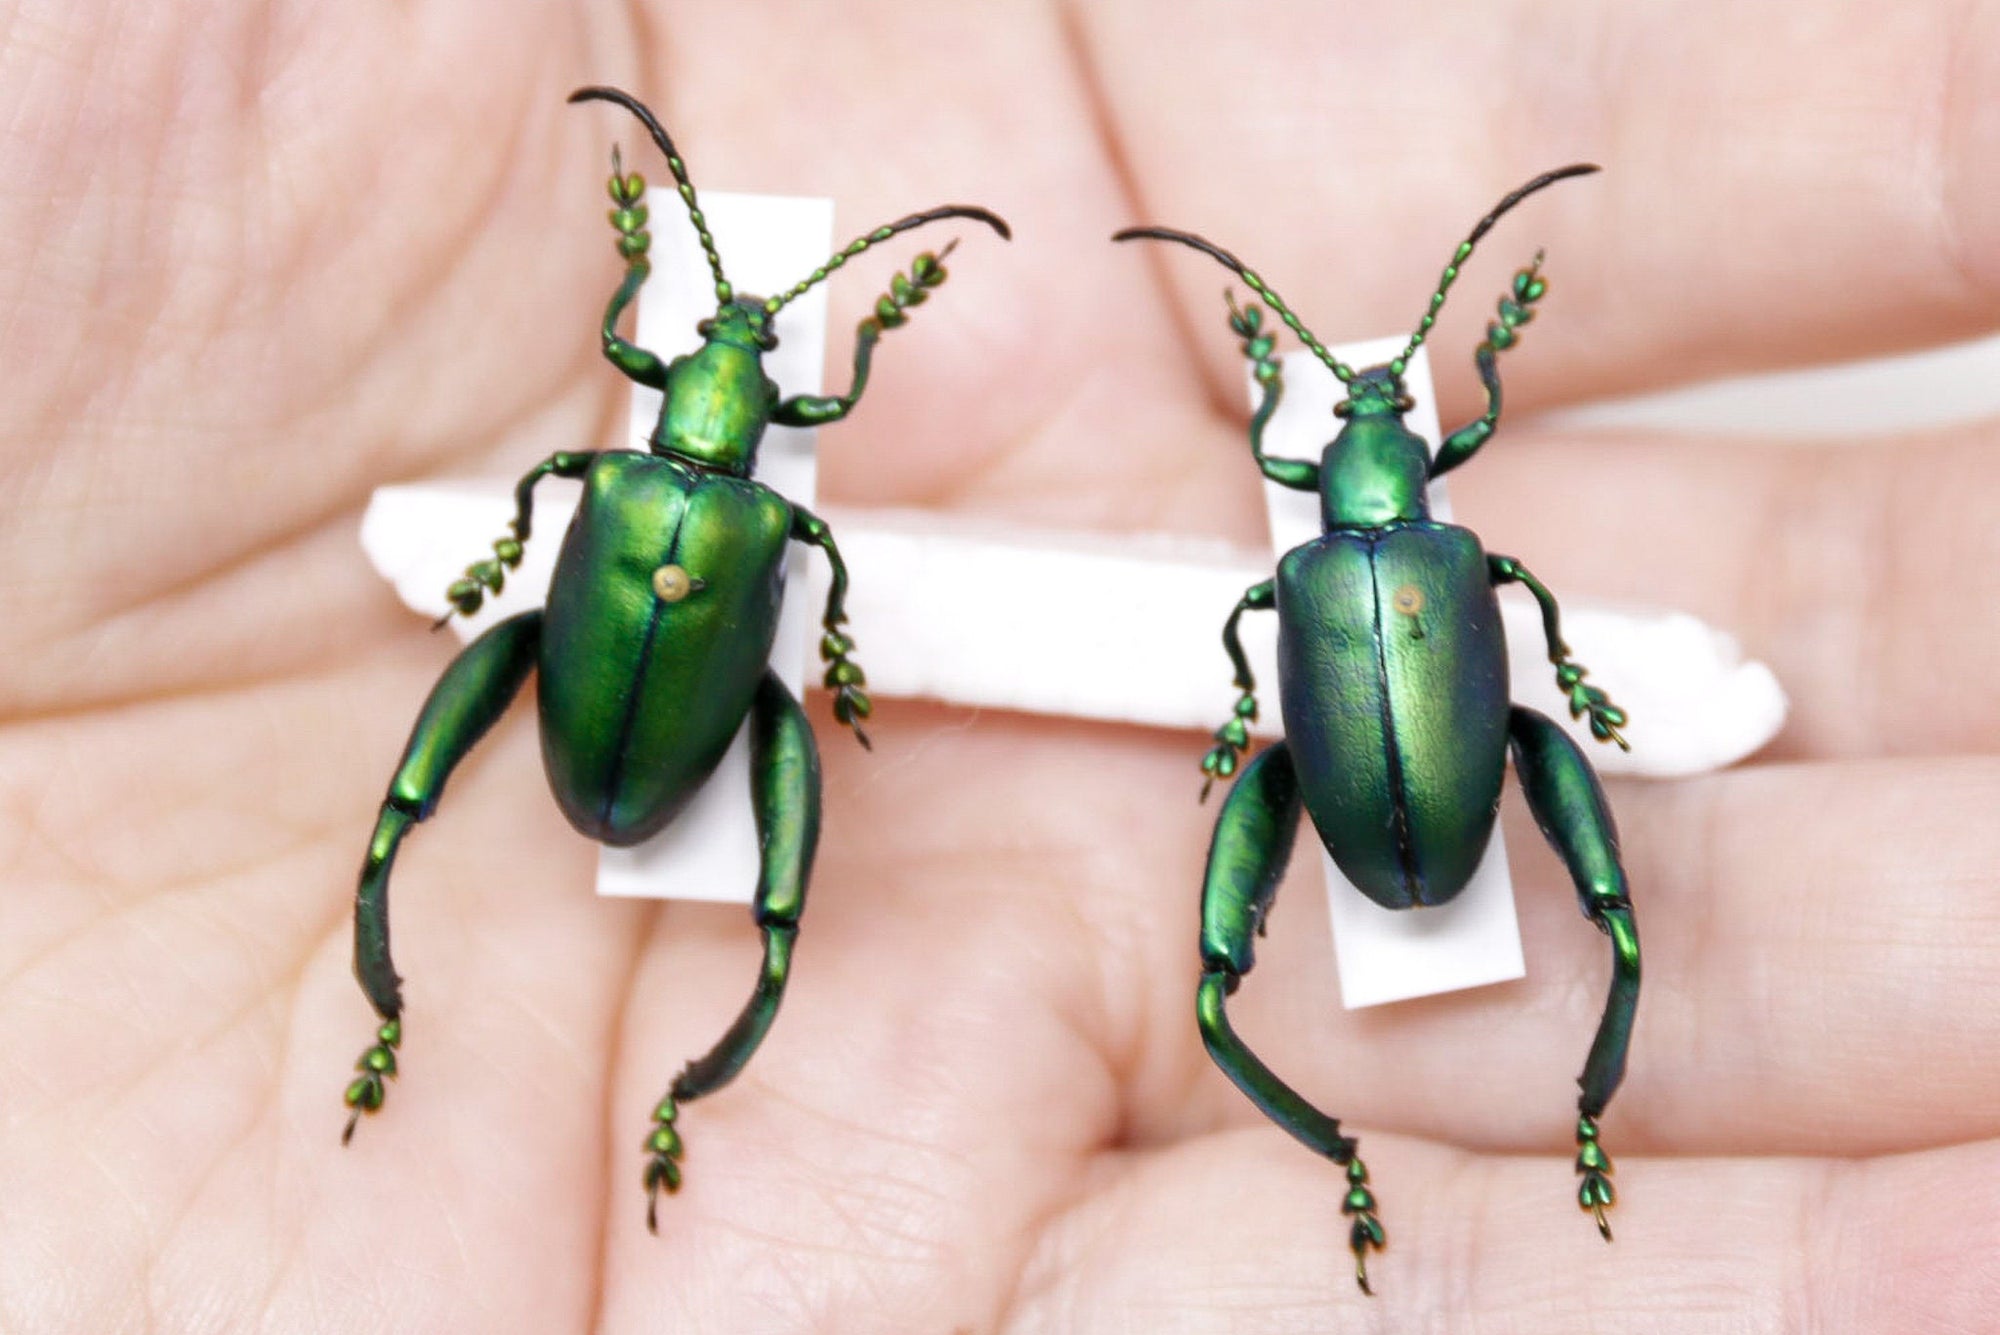 2 Sagra femoralis, A1 Real Beetle Set Specimen, Entomology Taxidermy #OC11